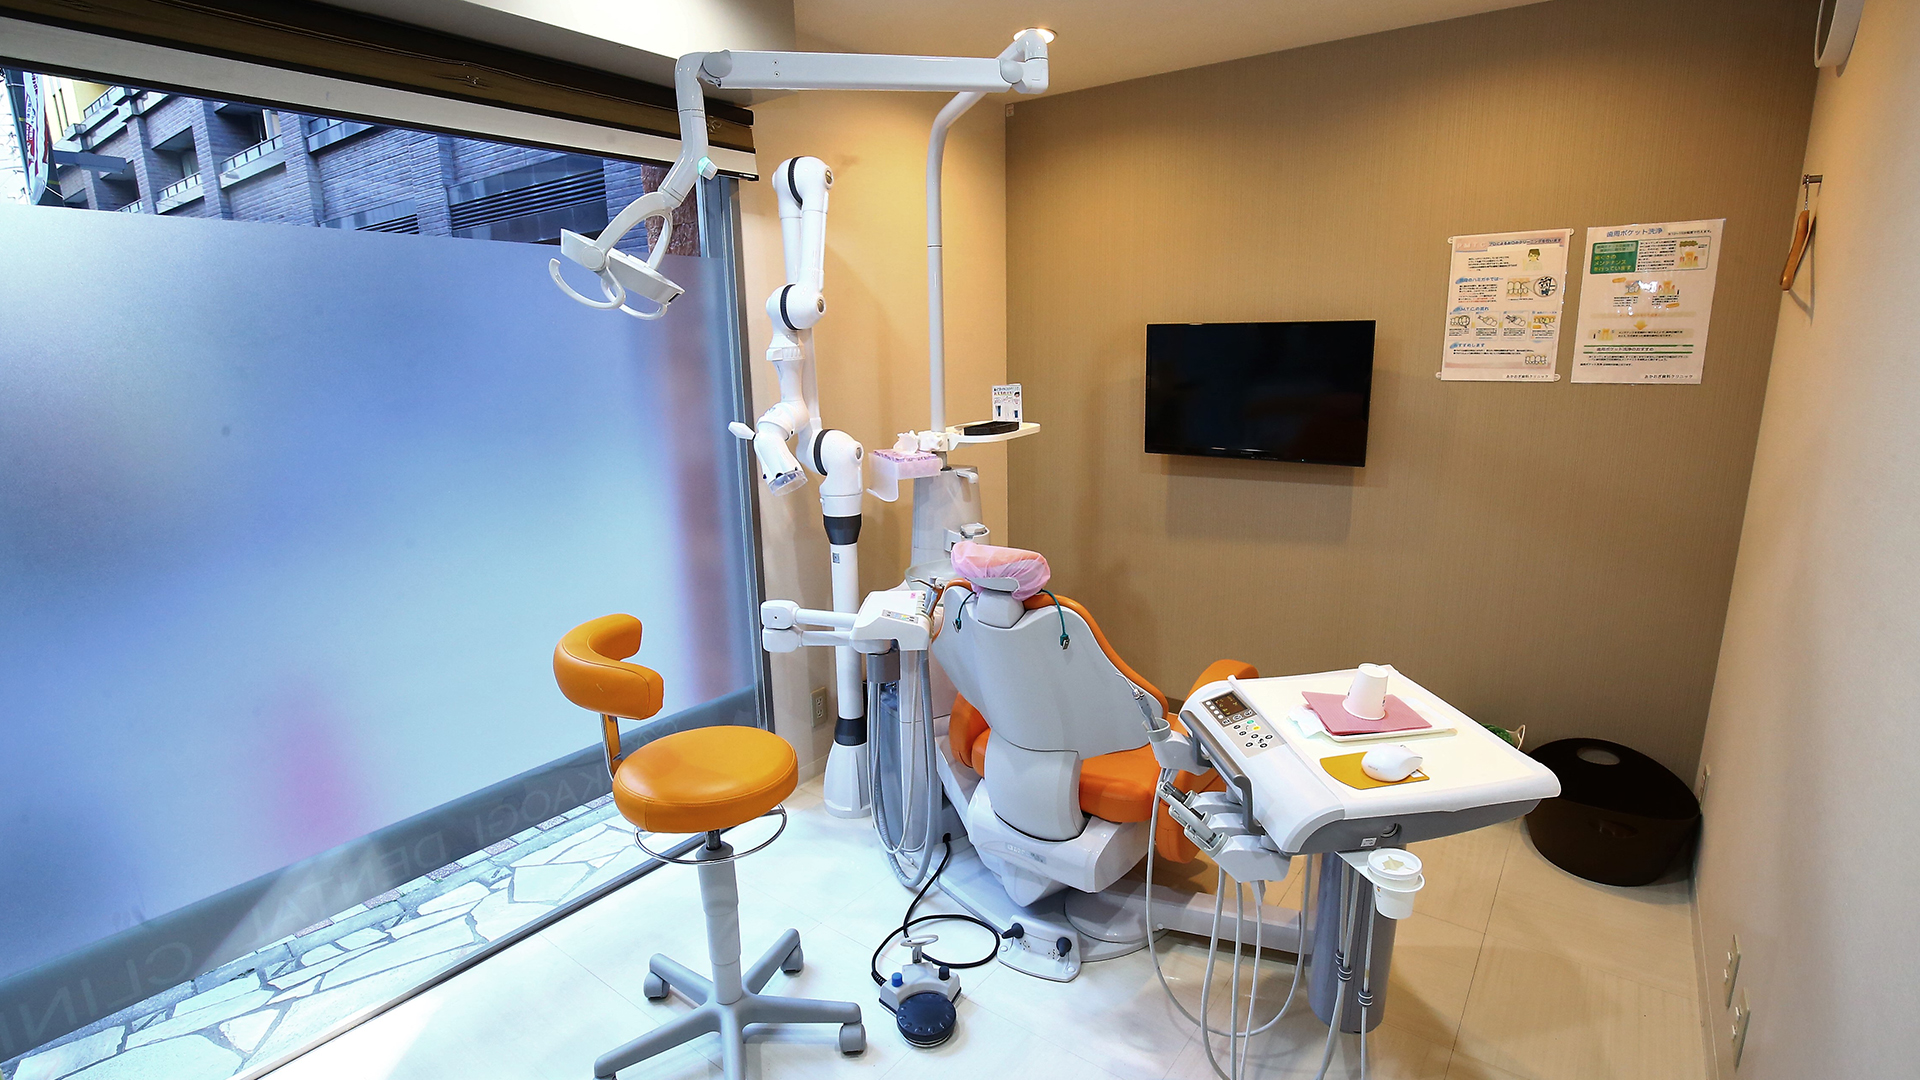 台 デンタル クリニック 文京 チャイルズデンタル│東京都文京区の小児歯科専門医院です